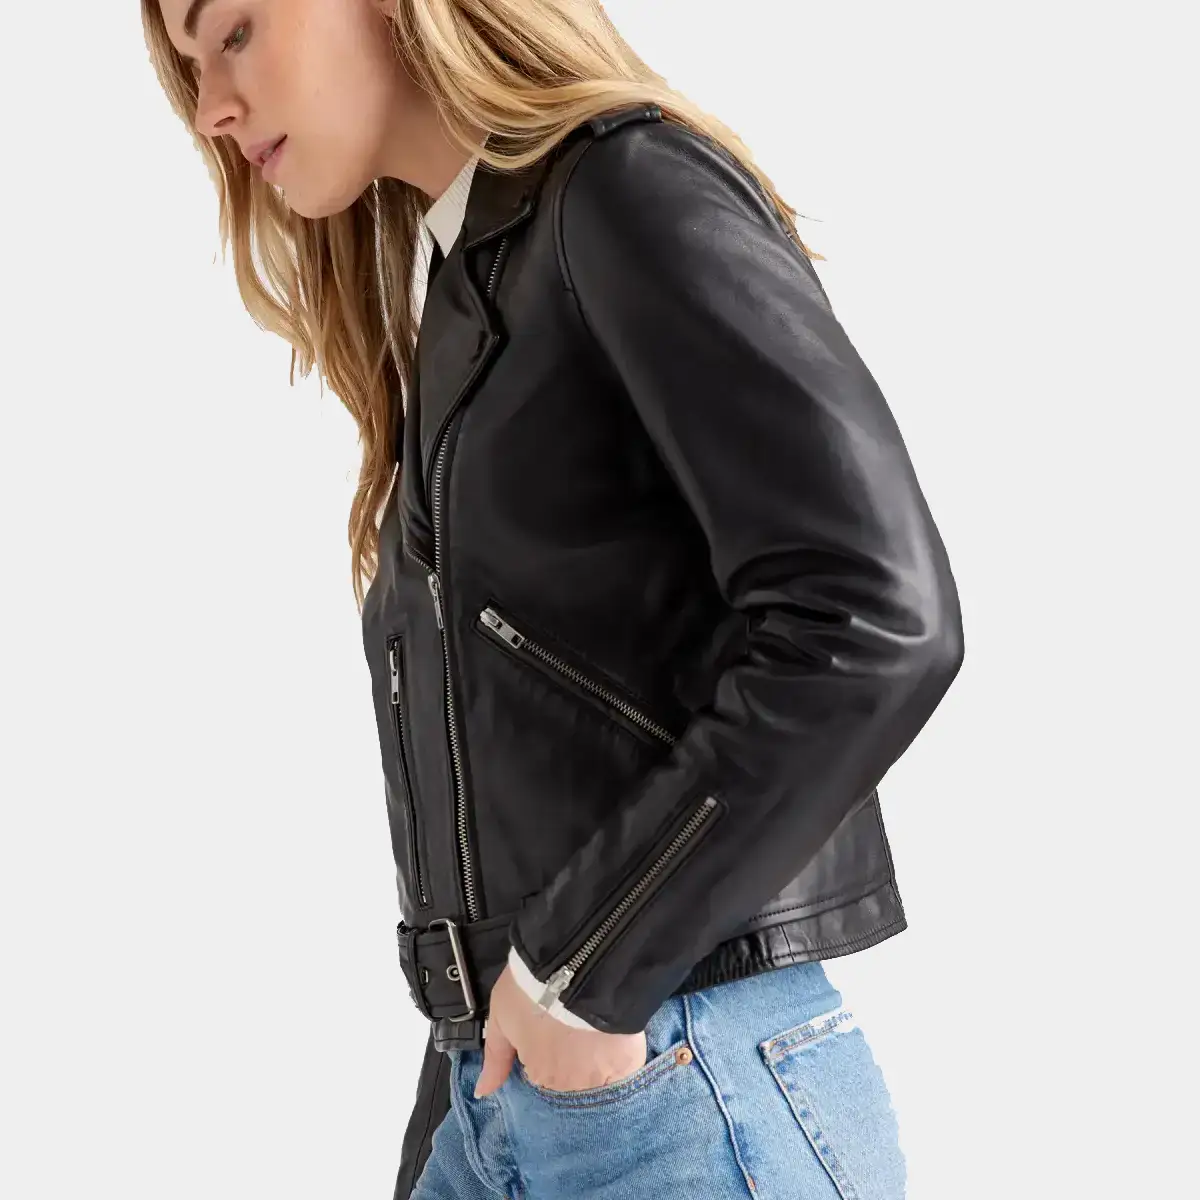 Biker leather jacket for women